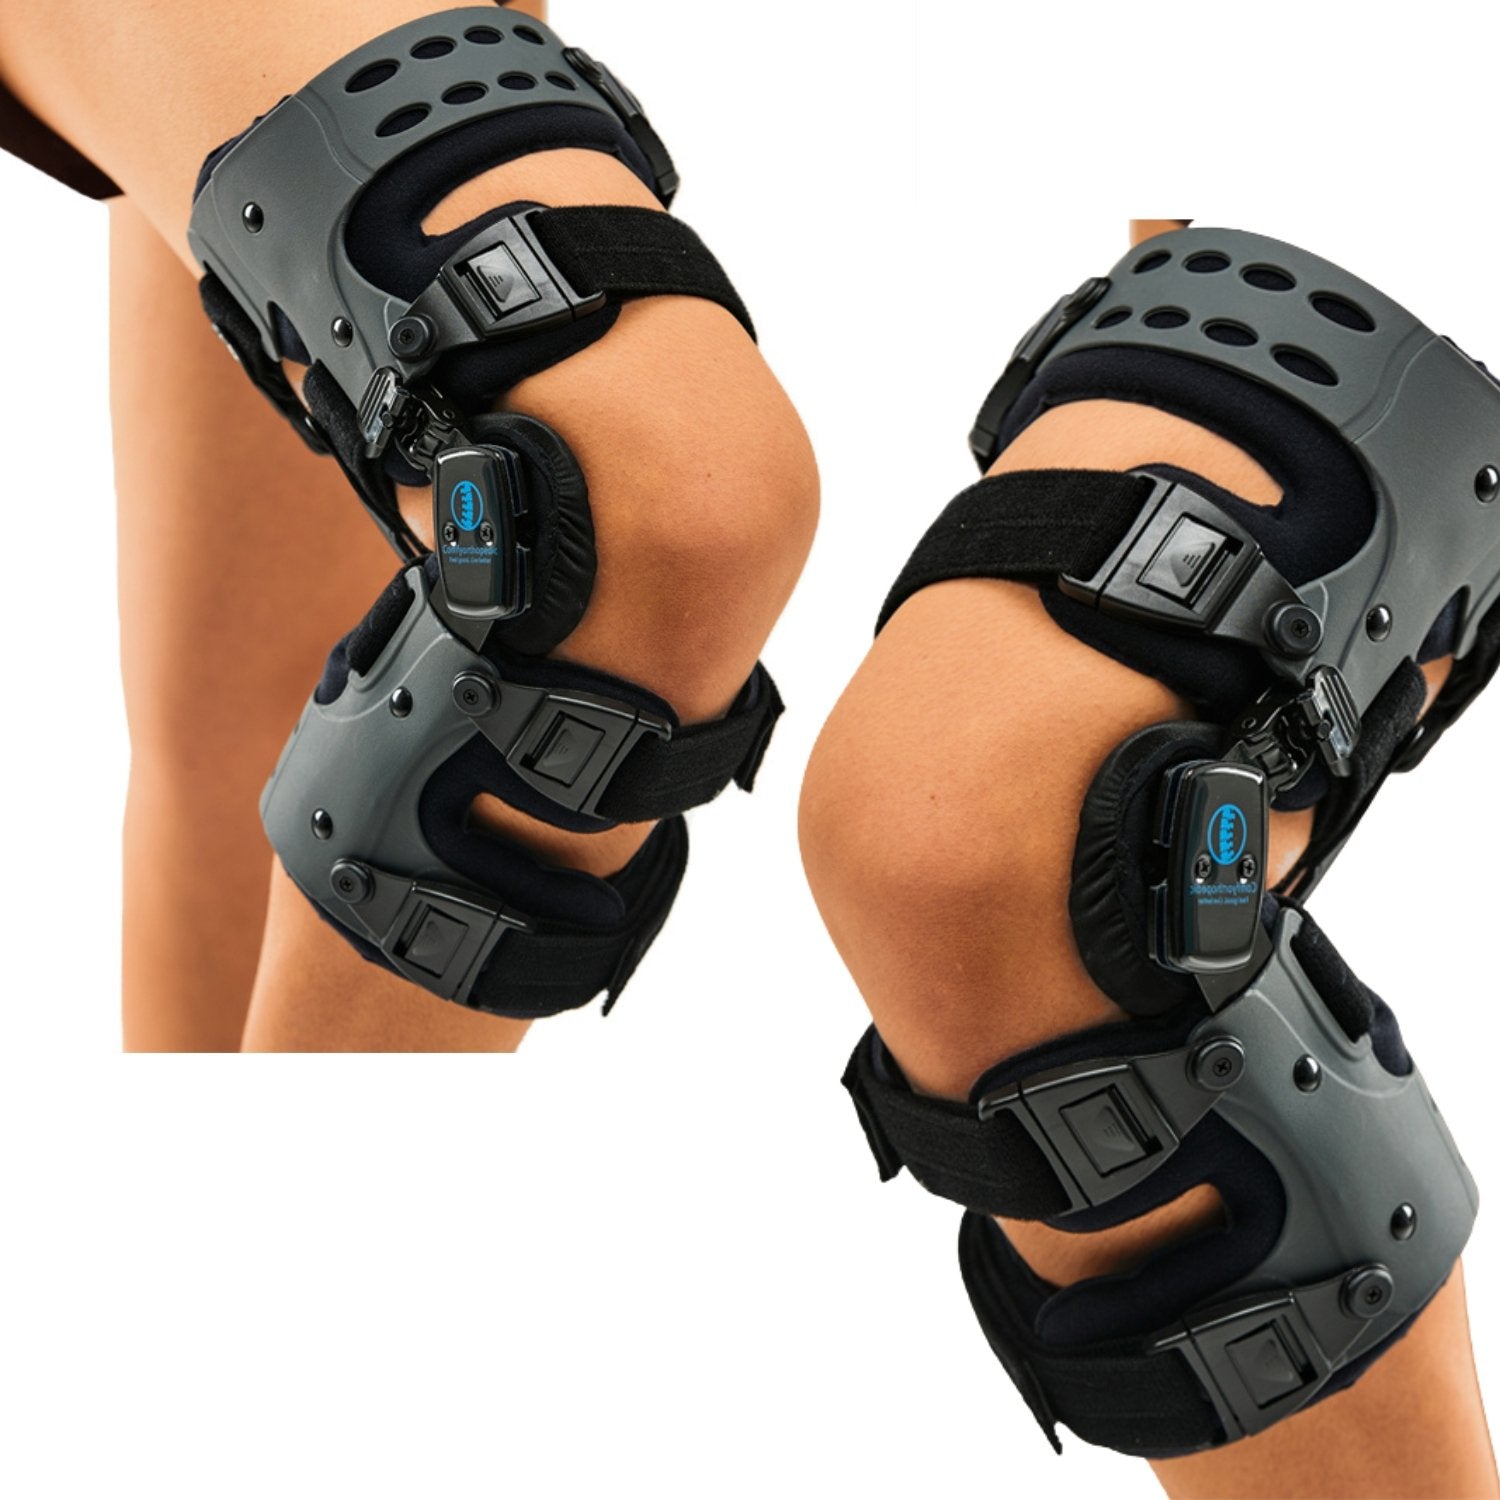 OA Unloader Knee Brace Support Medial or lateral Support – Comfyorthopedic